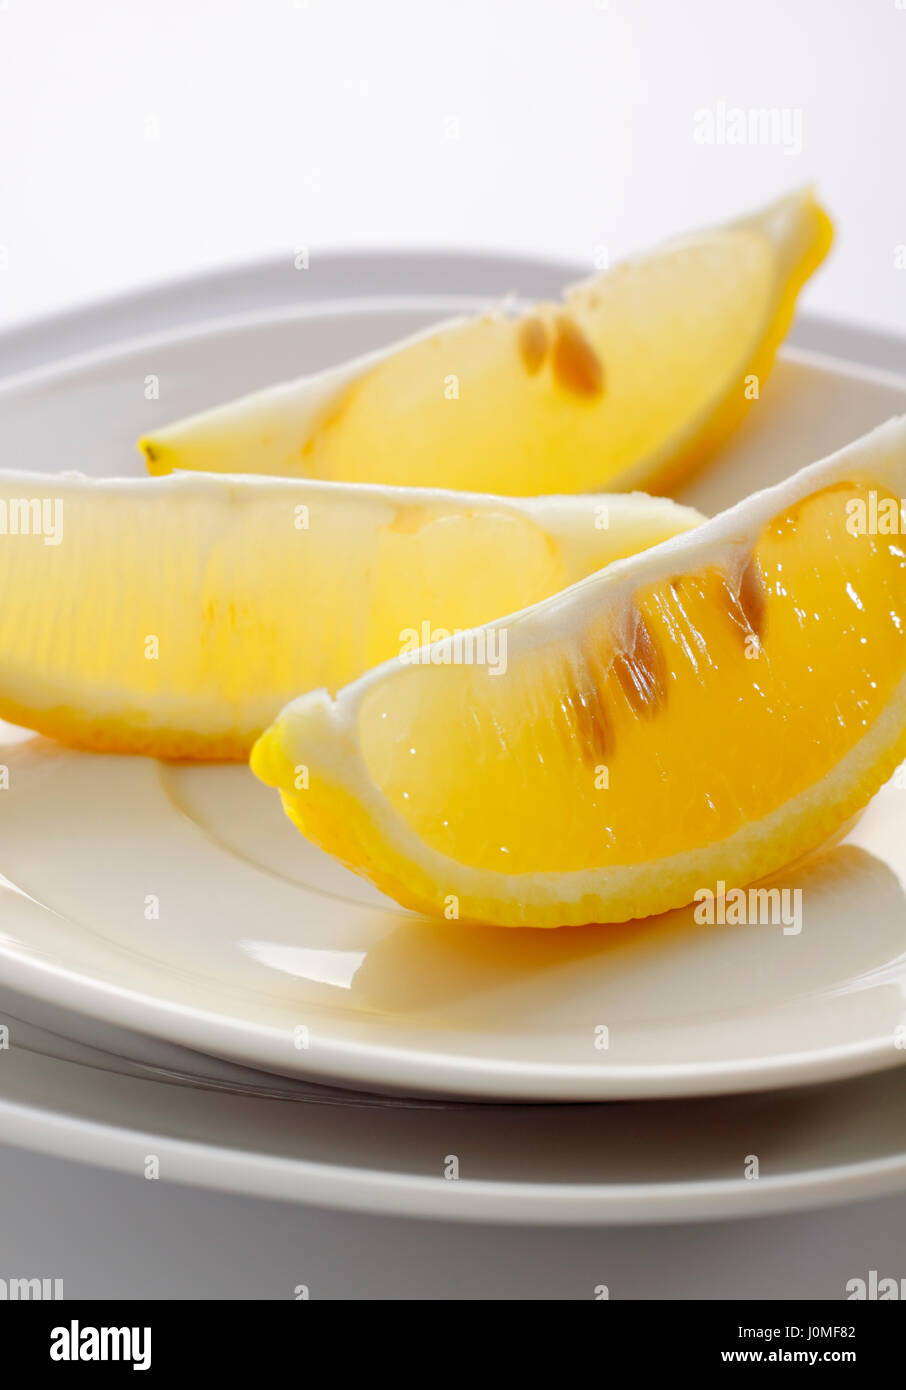 Zitrone Obst Teile lagen auf weißen Teller Stockfoto